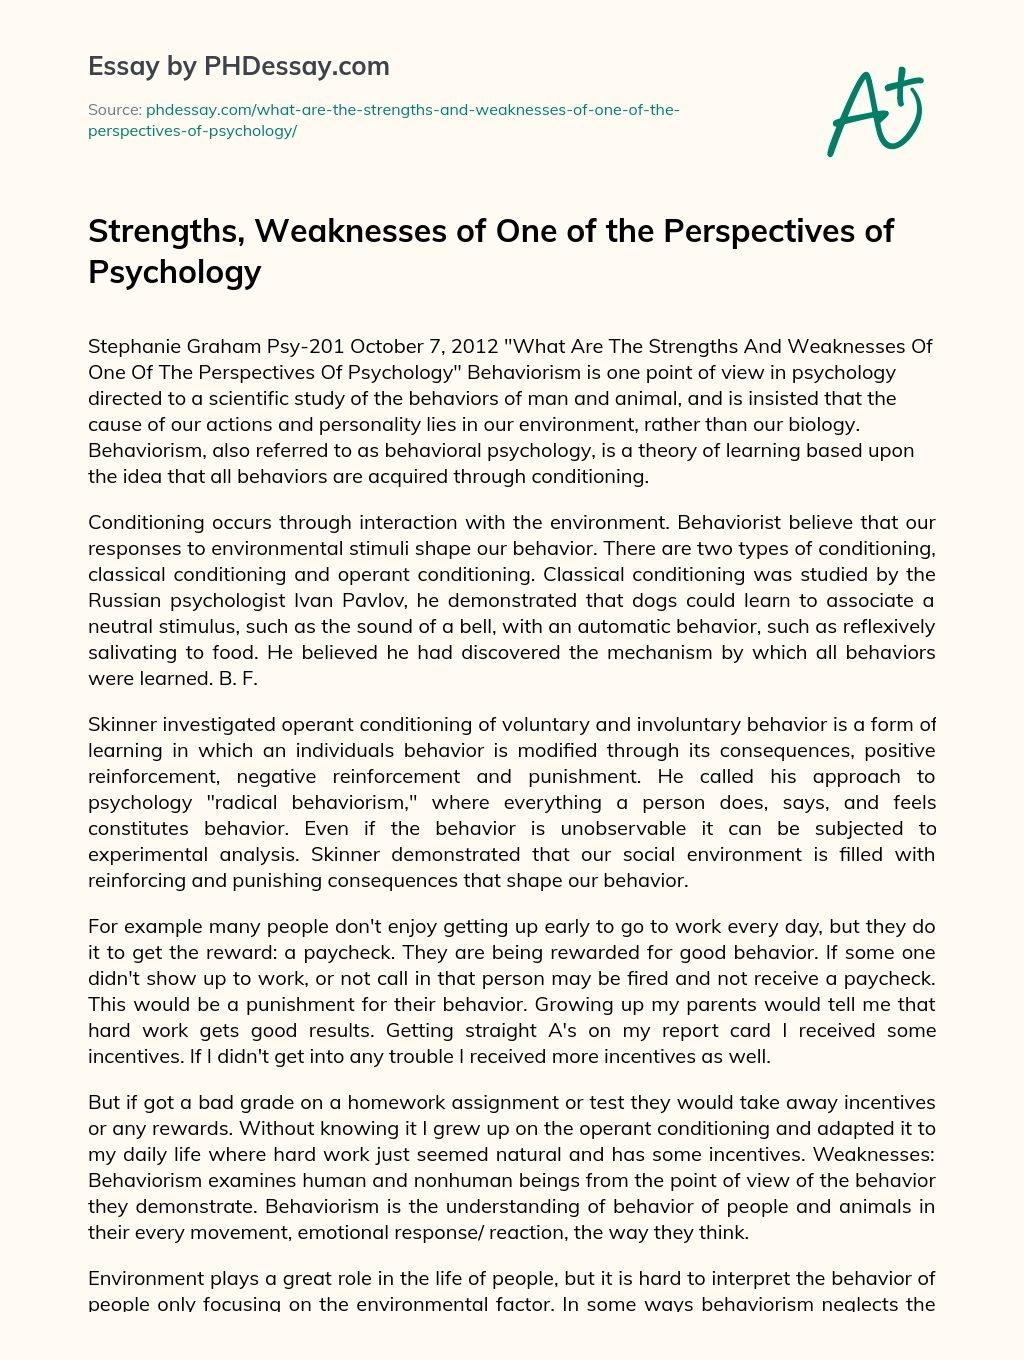 Strengths, Weaknesses of Behaviorism essay